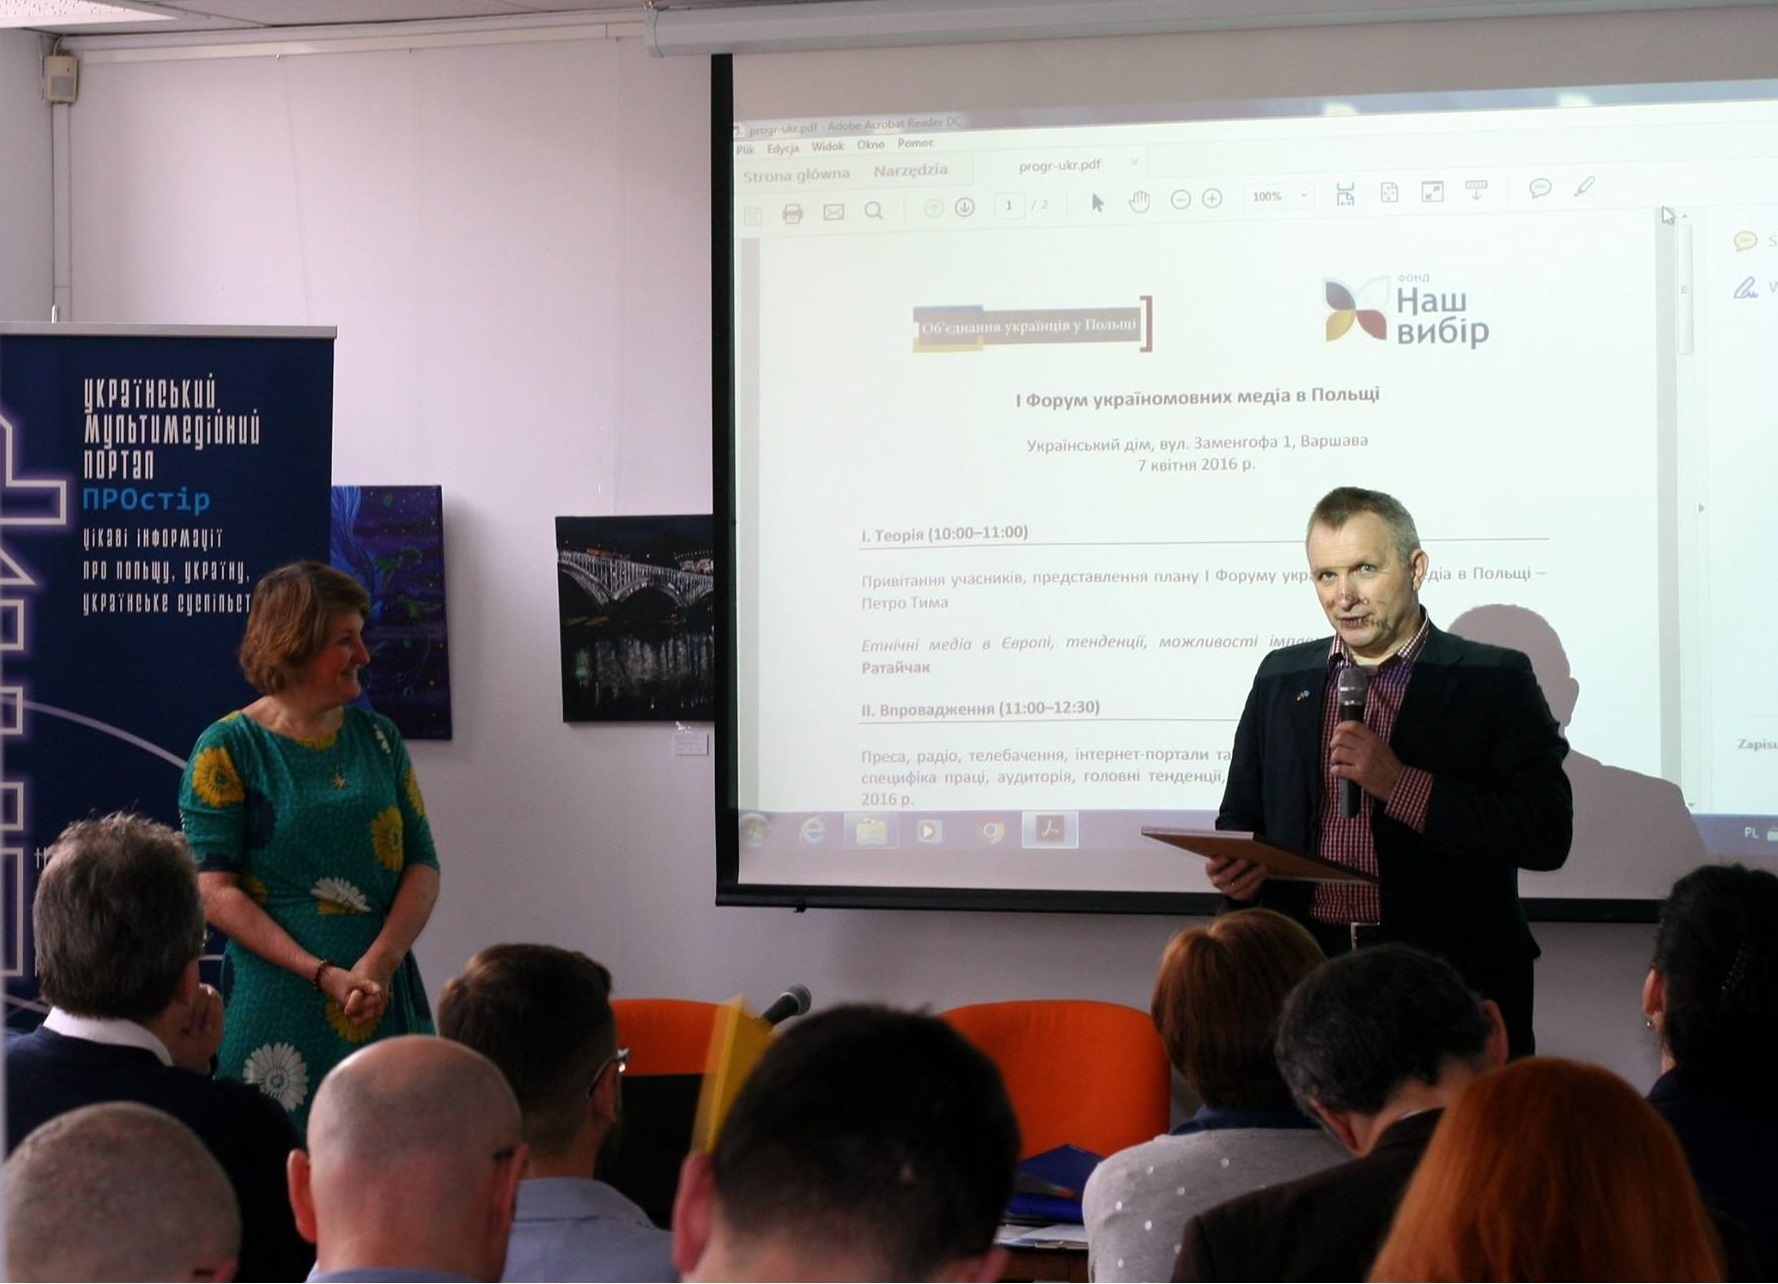 Форум україномовних медіа в Польщі